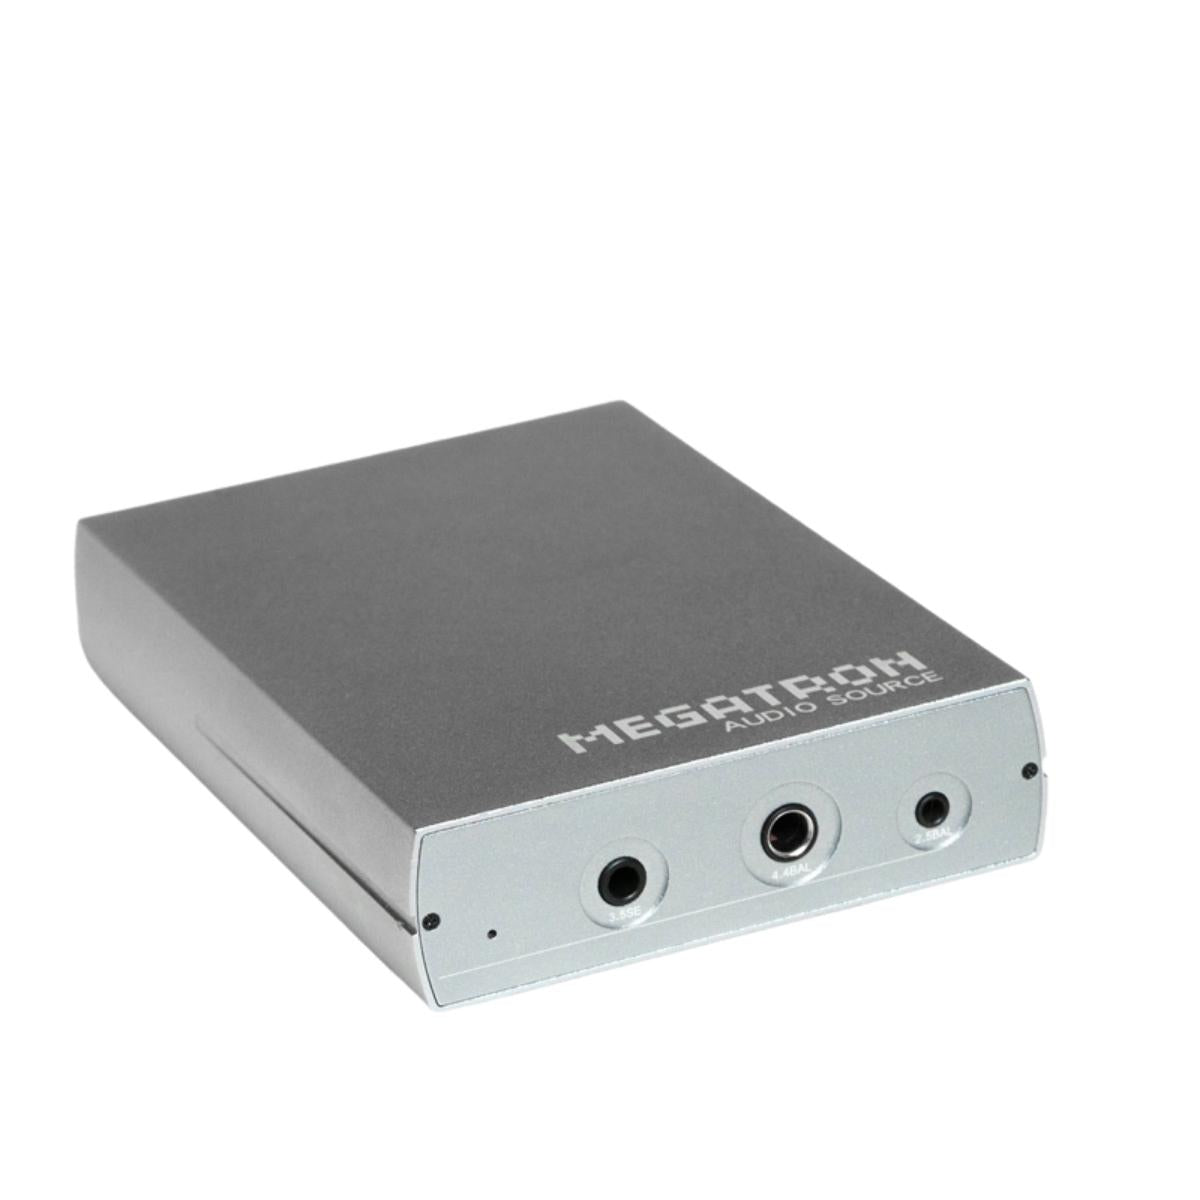 Venture Electronics Megatron DAC & Amplifier